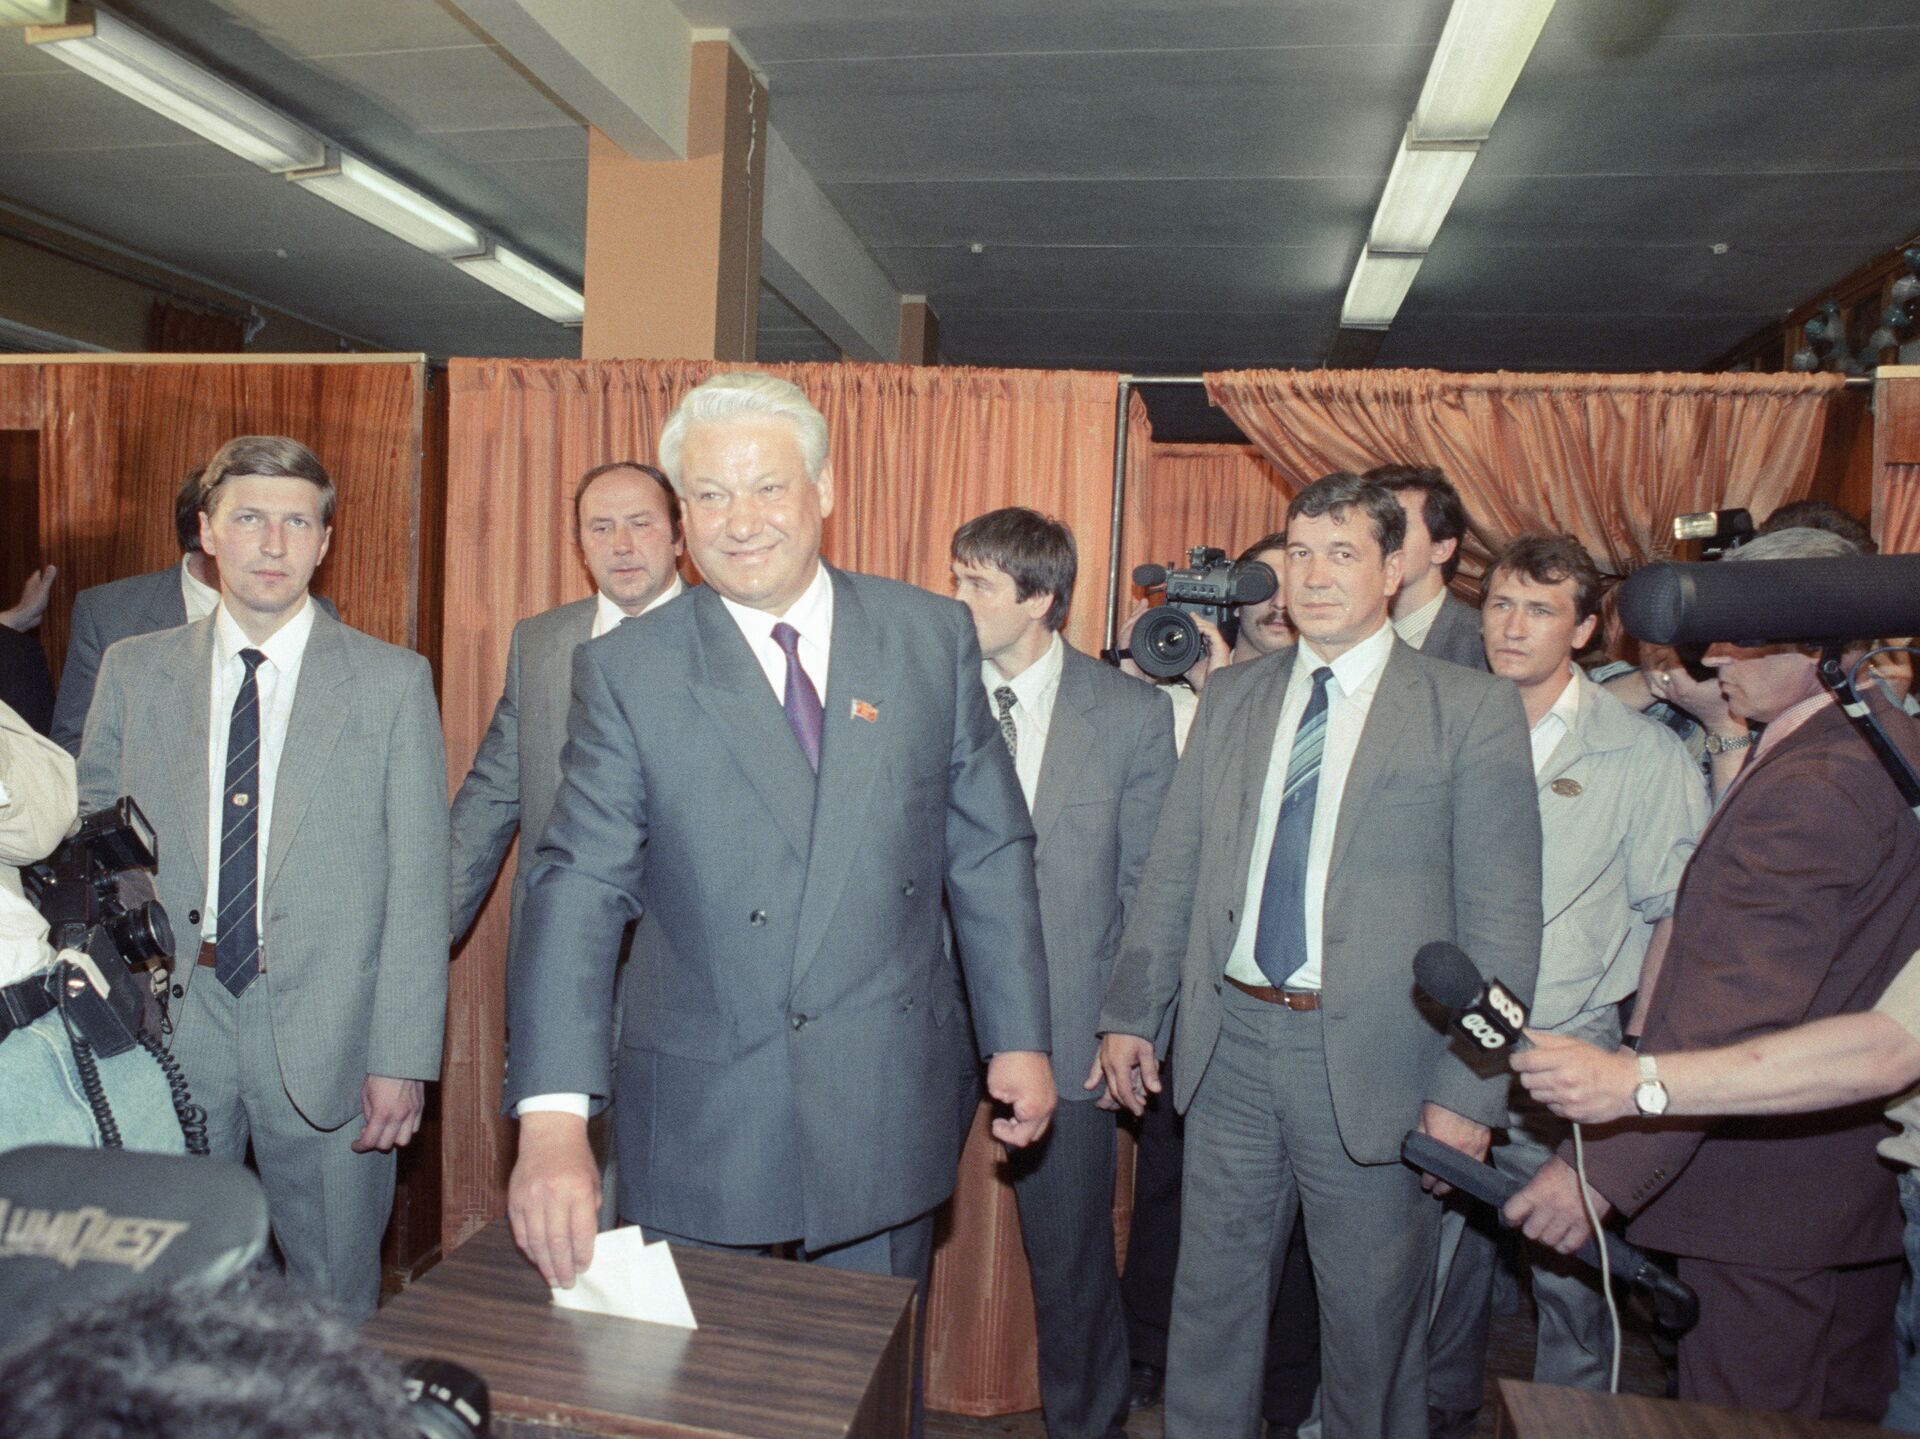 Выборы президента риа. 12 Июня 1991 г. - избрание первого президента РСФСР. Тулеев и Ельцин.